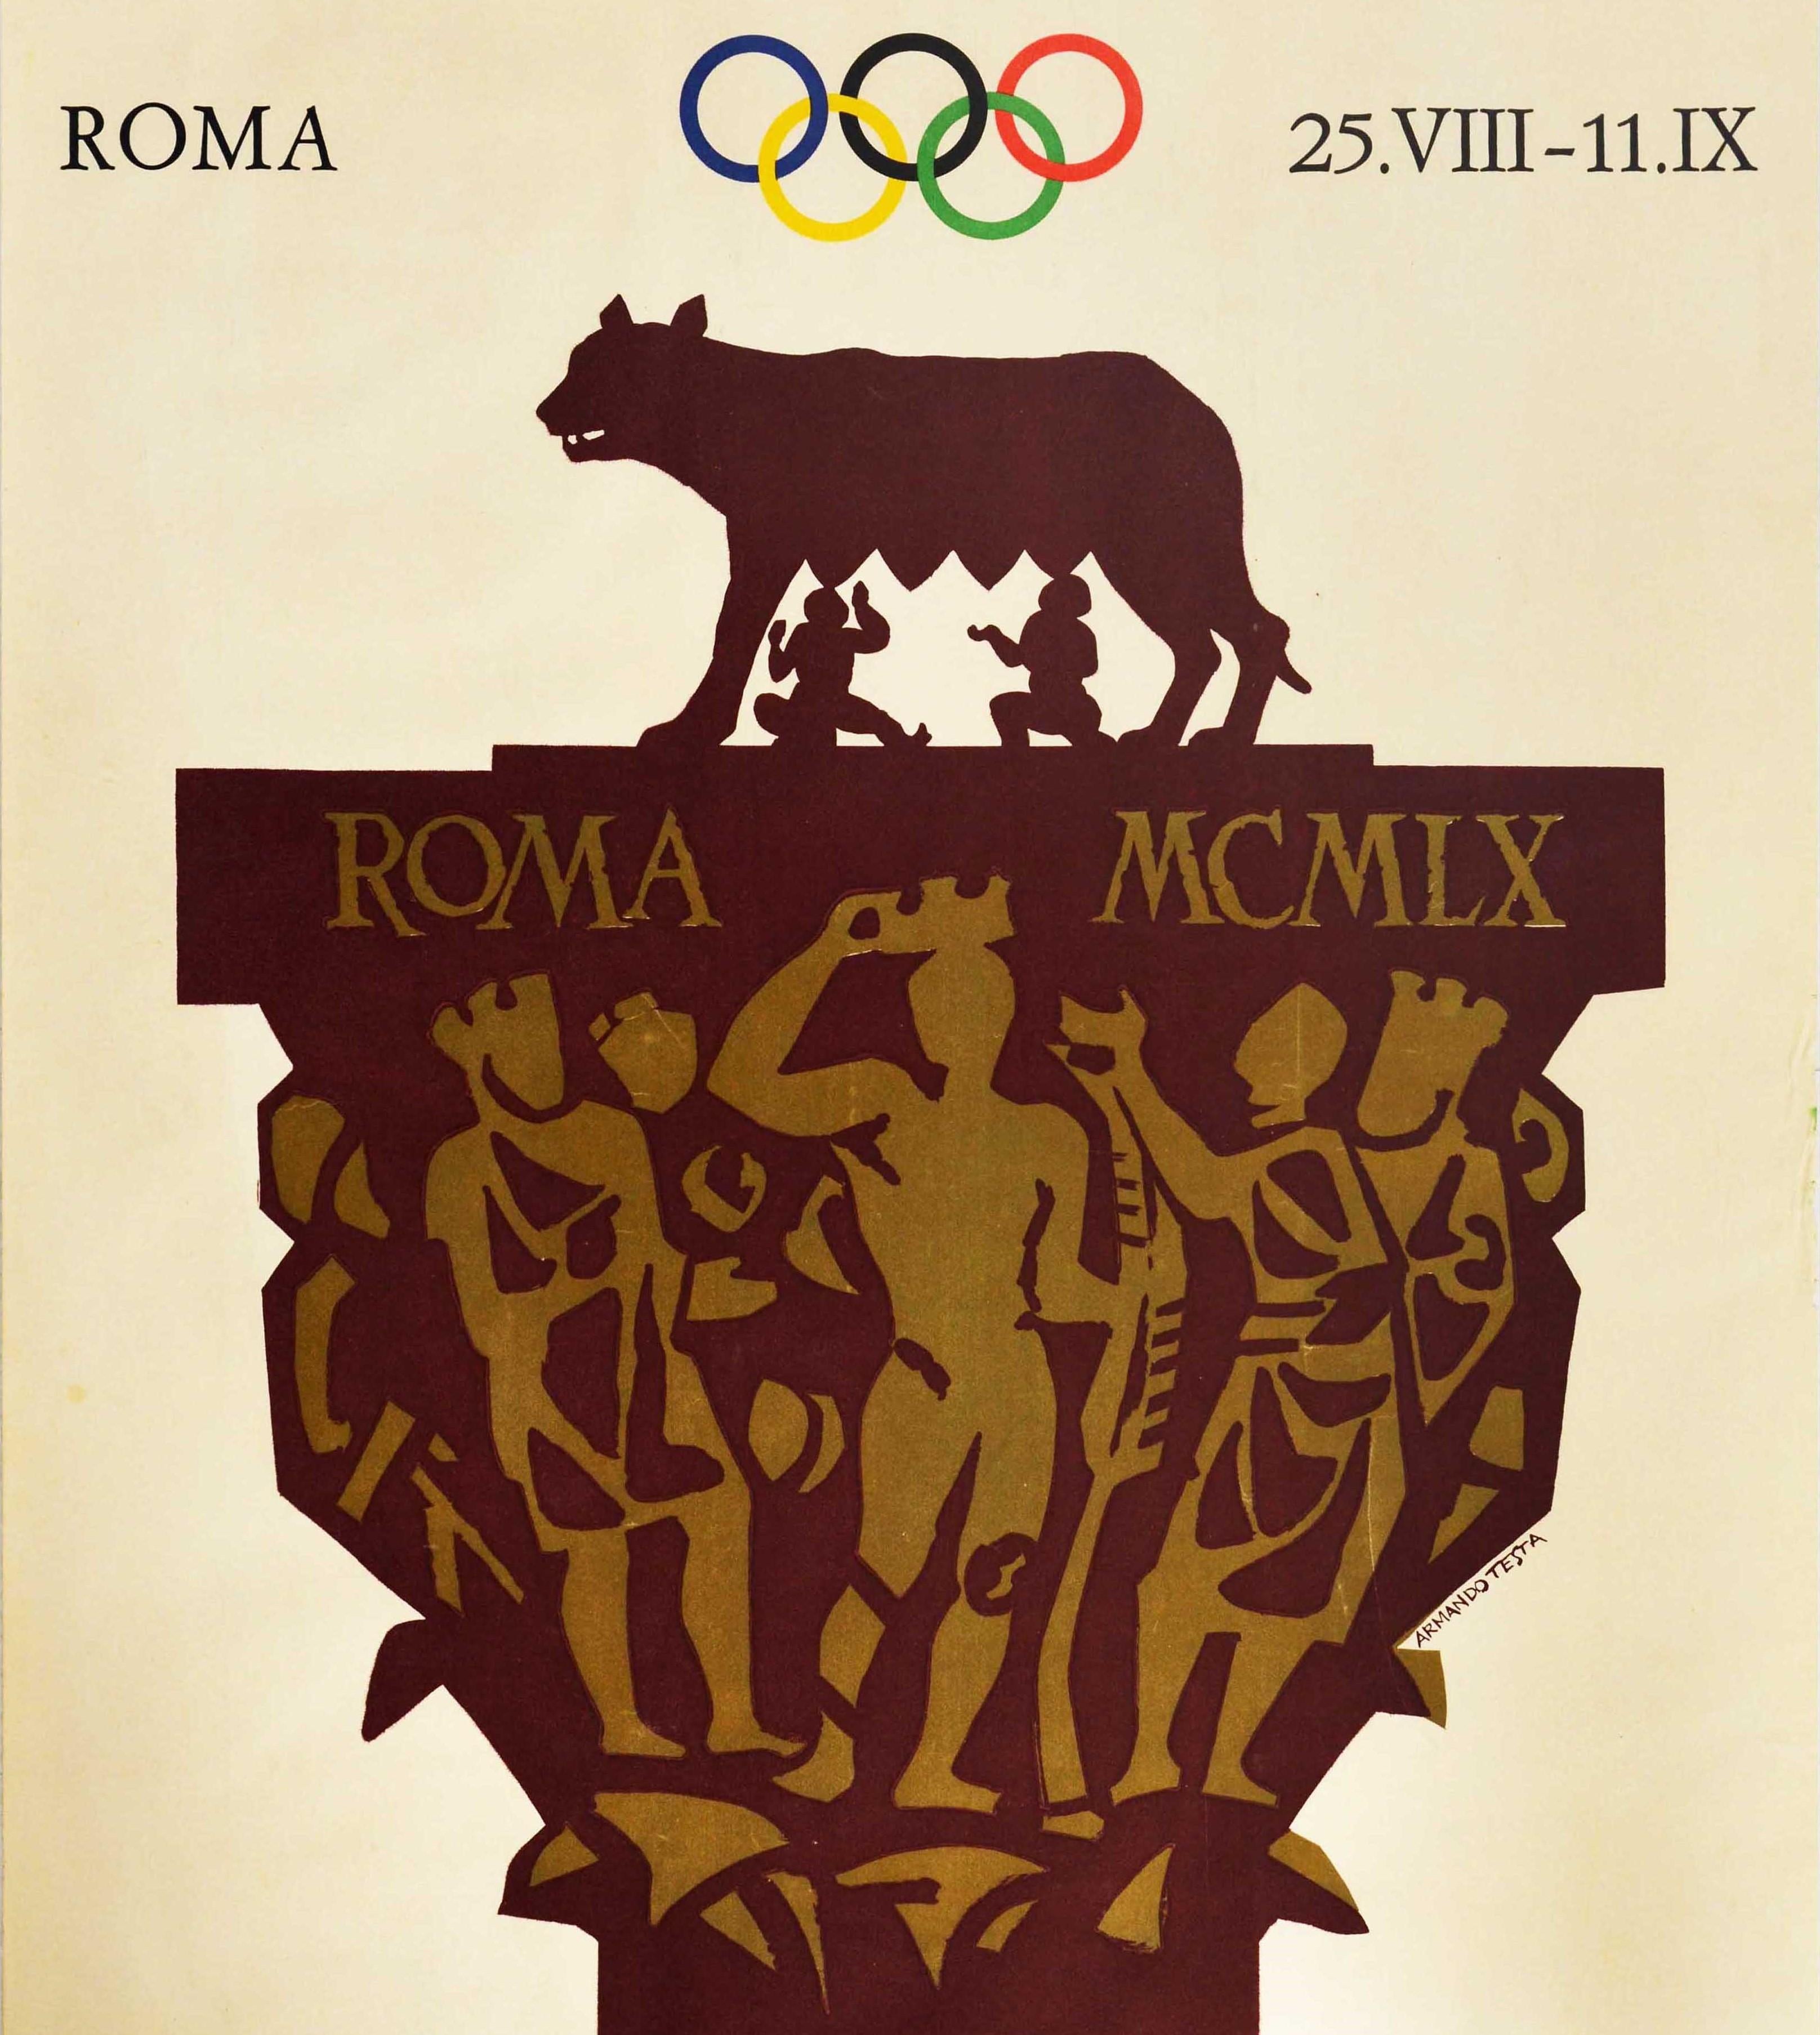 Affiche sportive vintage originale pour Die XVII Olympischen Spiele Roma 25.VIII-11.IX avec un superbe dessin d'Armando Testa (1917-1992) représentant les frères jumeaux Romulus et Remus allaités par le loup du Capitole (l'ancienne histoire de la